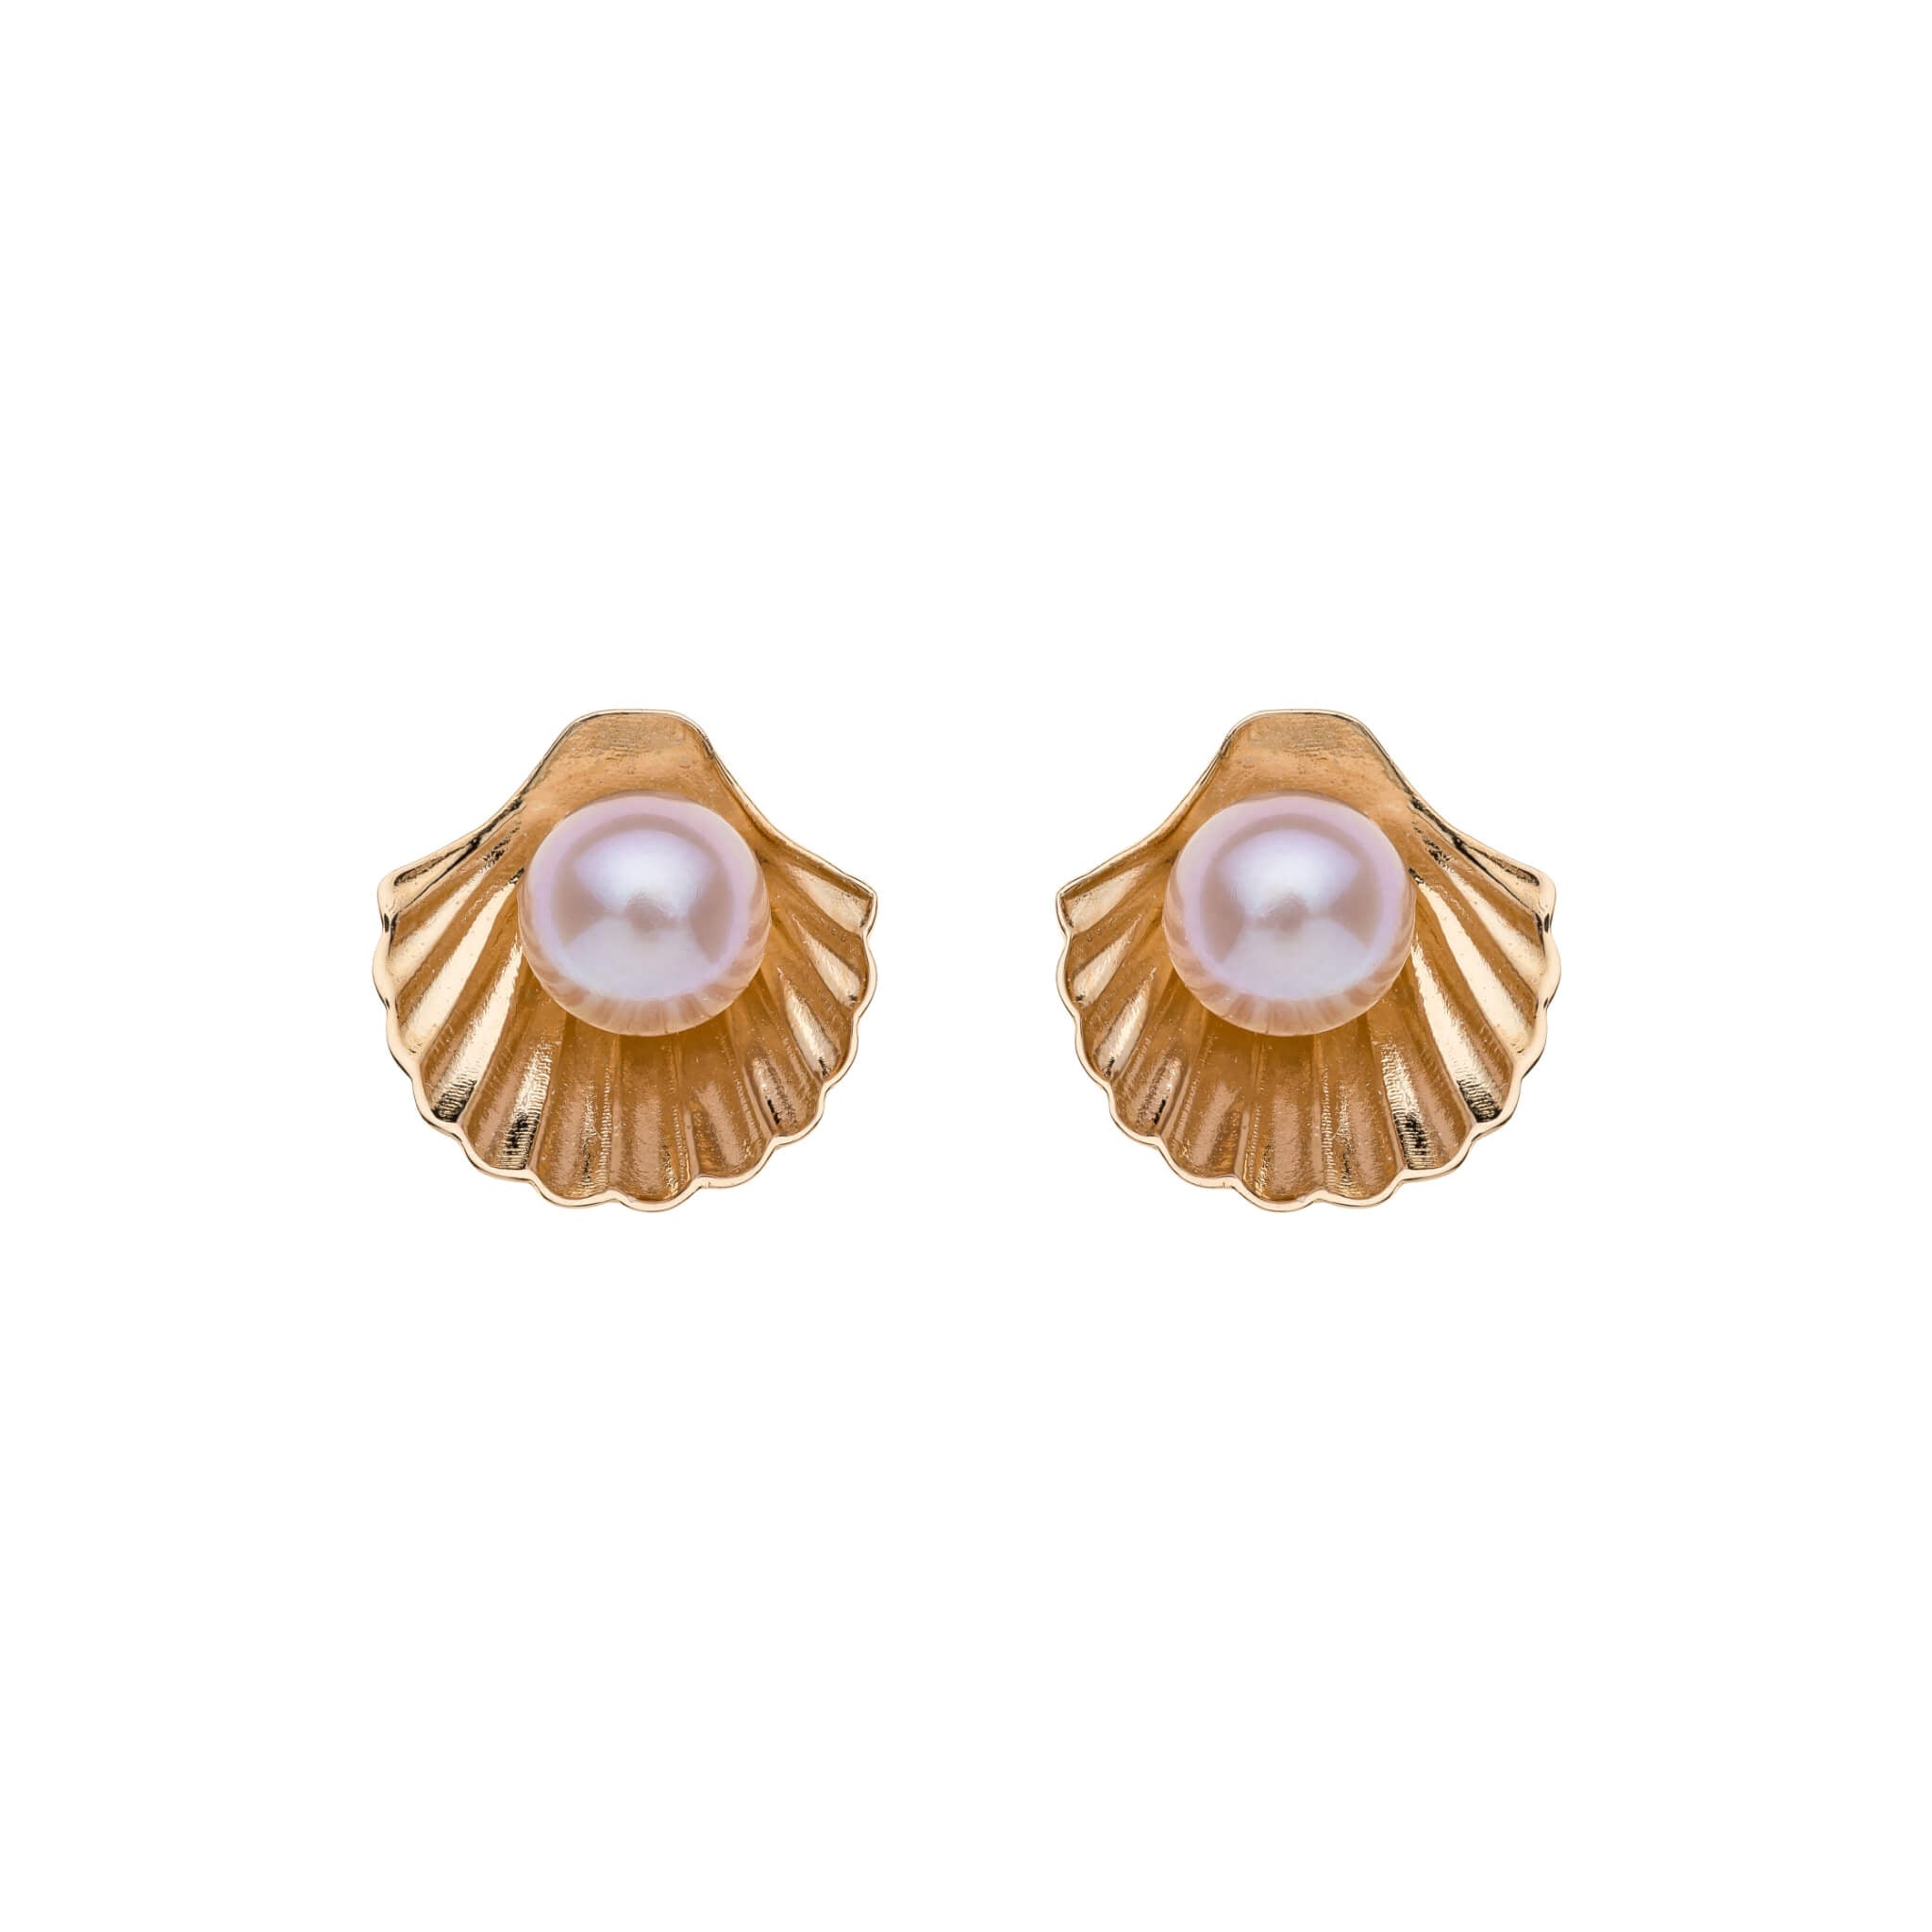 Złote kolczyki muszelki z perłami